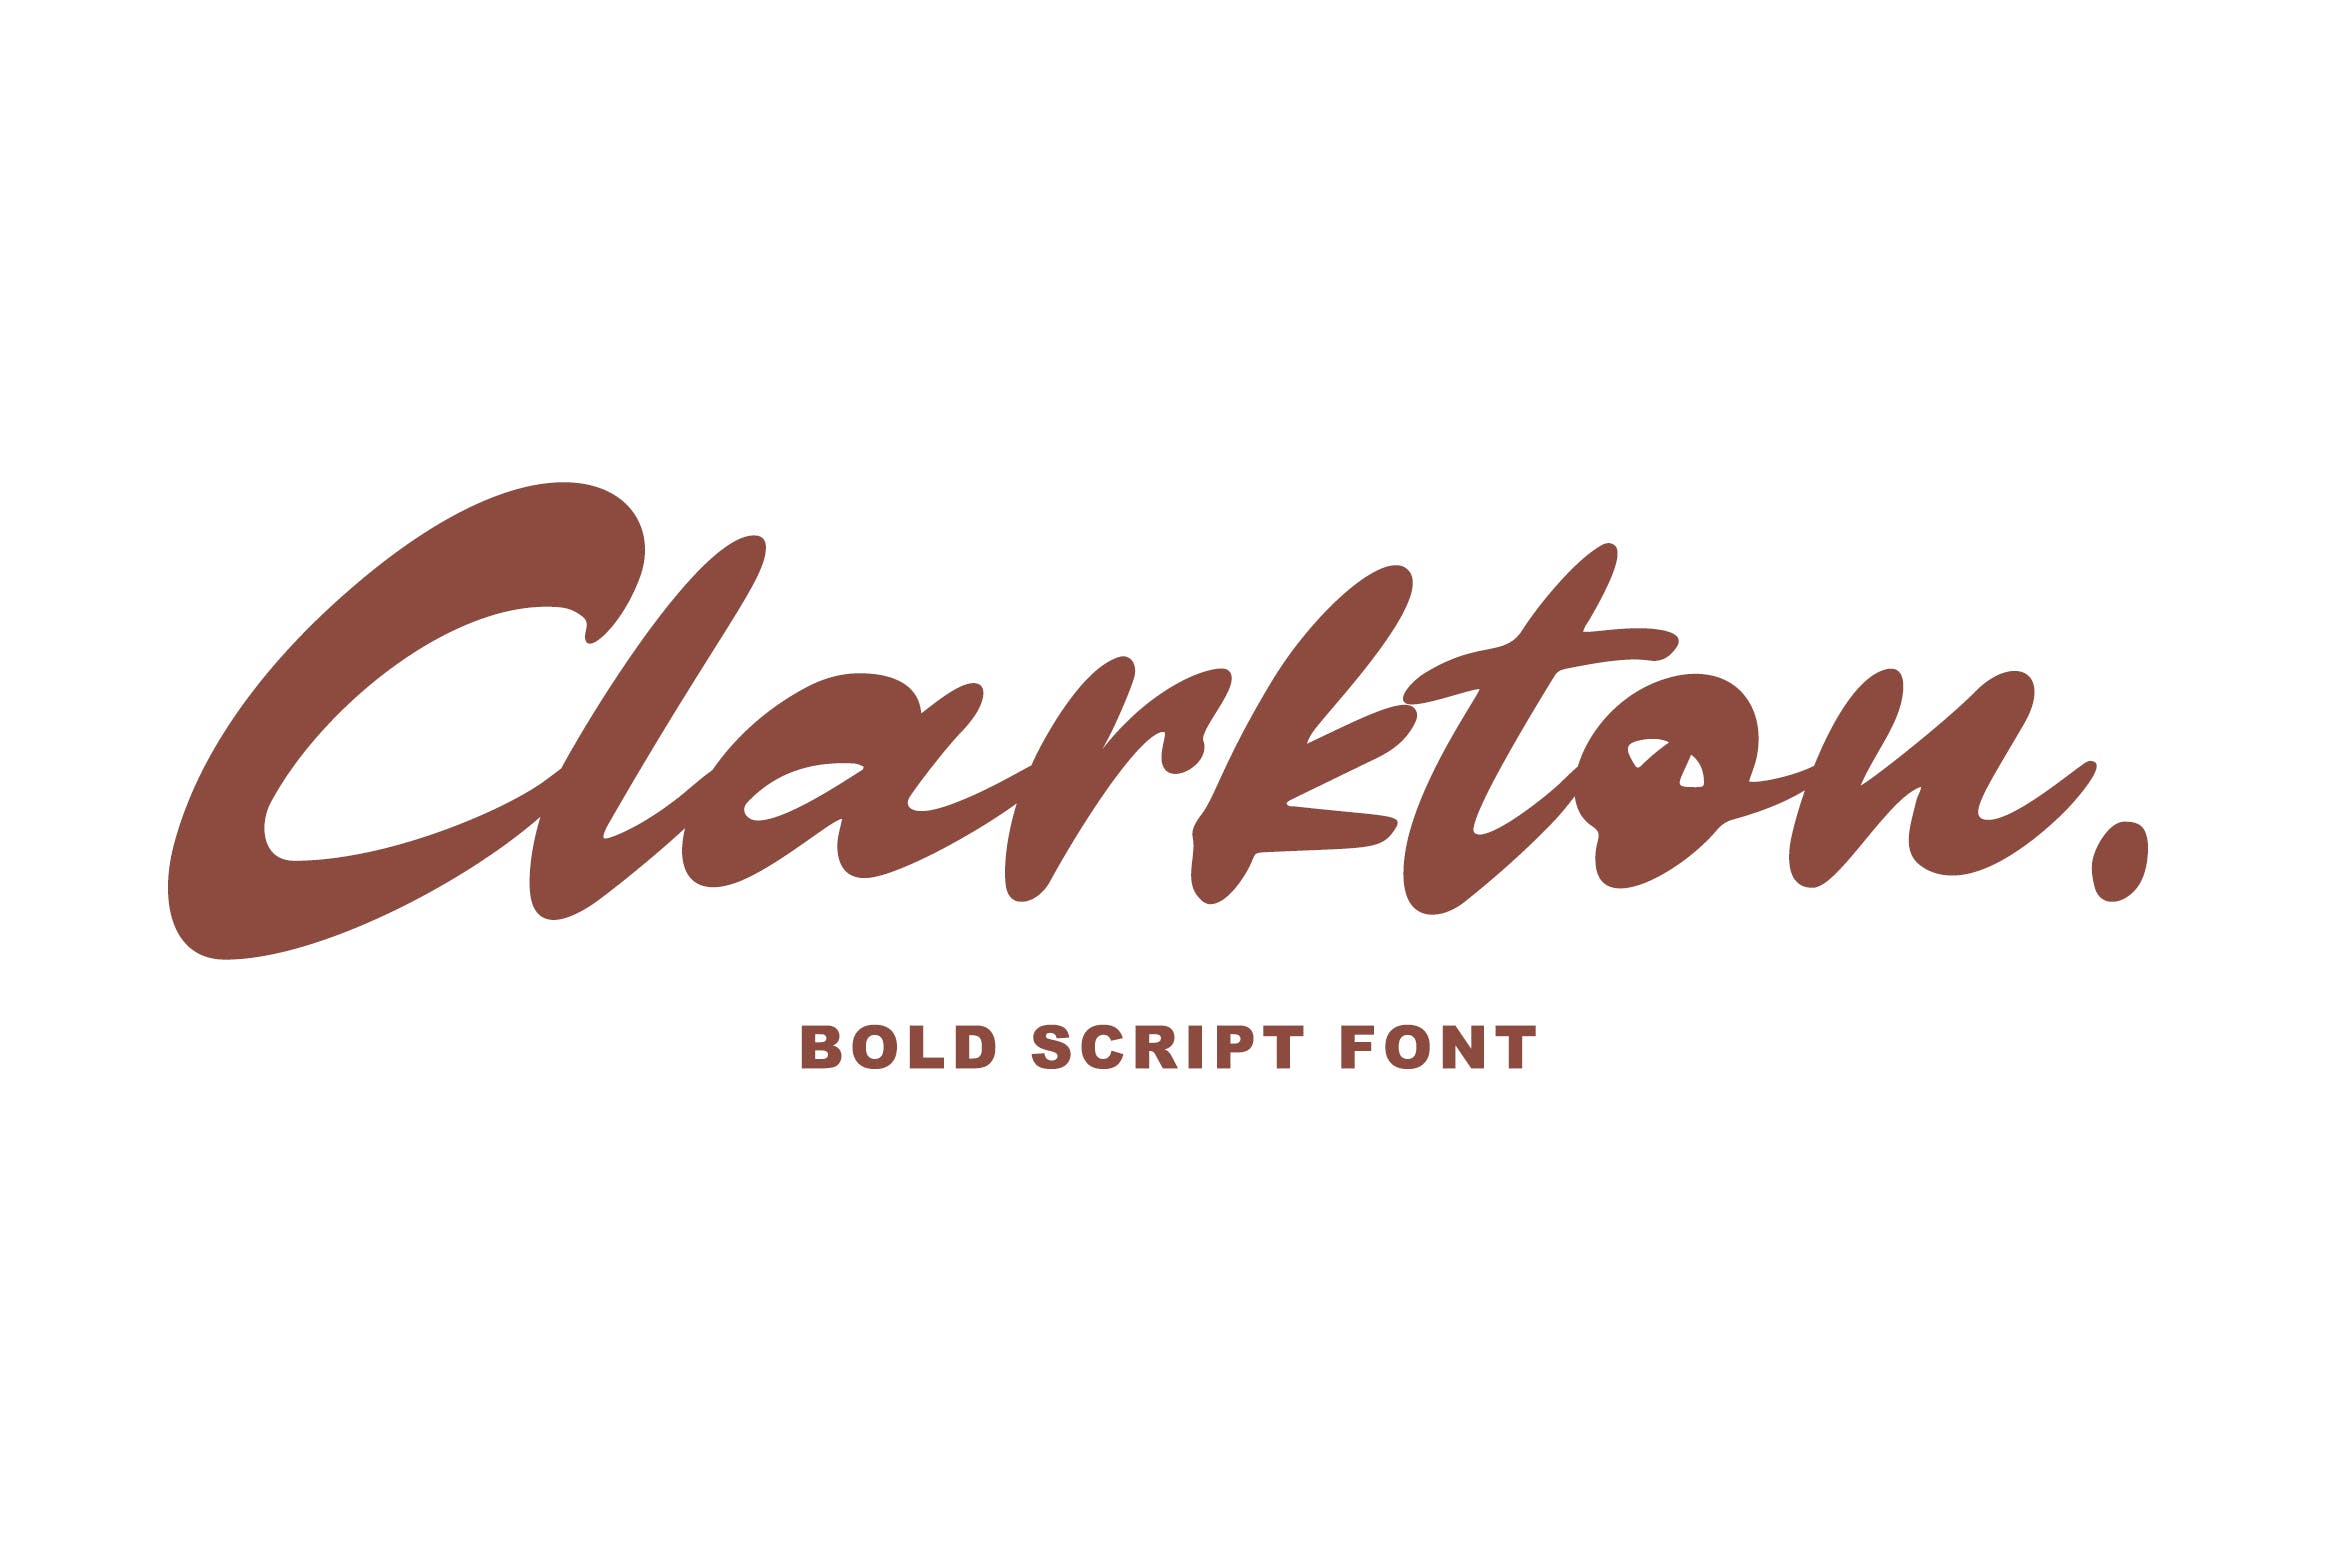 粗体画笔手写英文字体16设计素材网精选 Clarkton – Bold Script Font插图